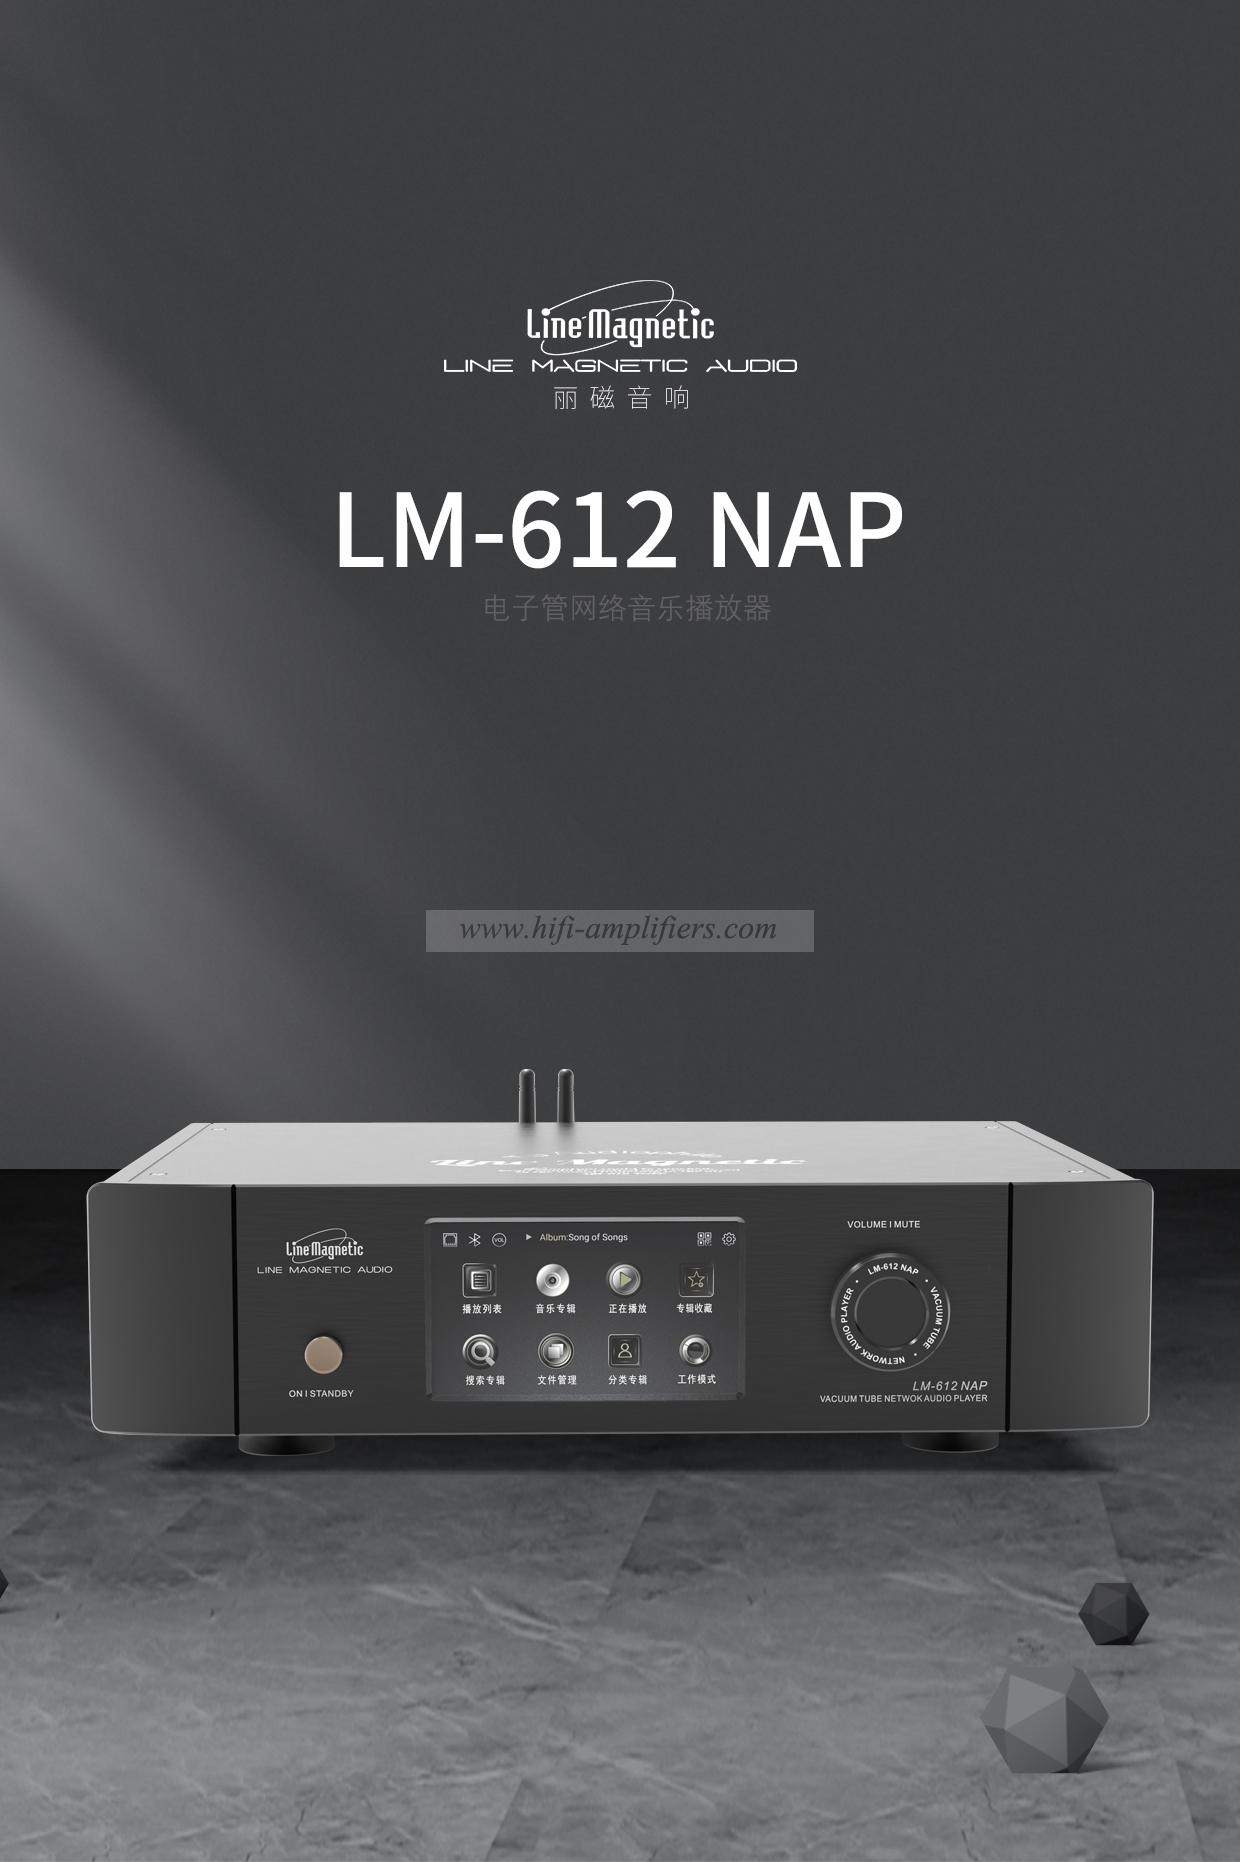 Линейный магнитный LM-612NAP ламповый сетевой музыкальный плеер DSD выход исходного кода чип ESS9038PRO для декодирования D/A